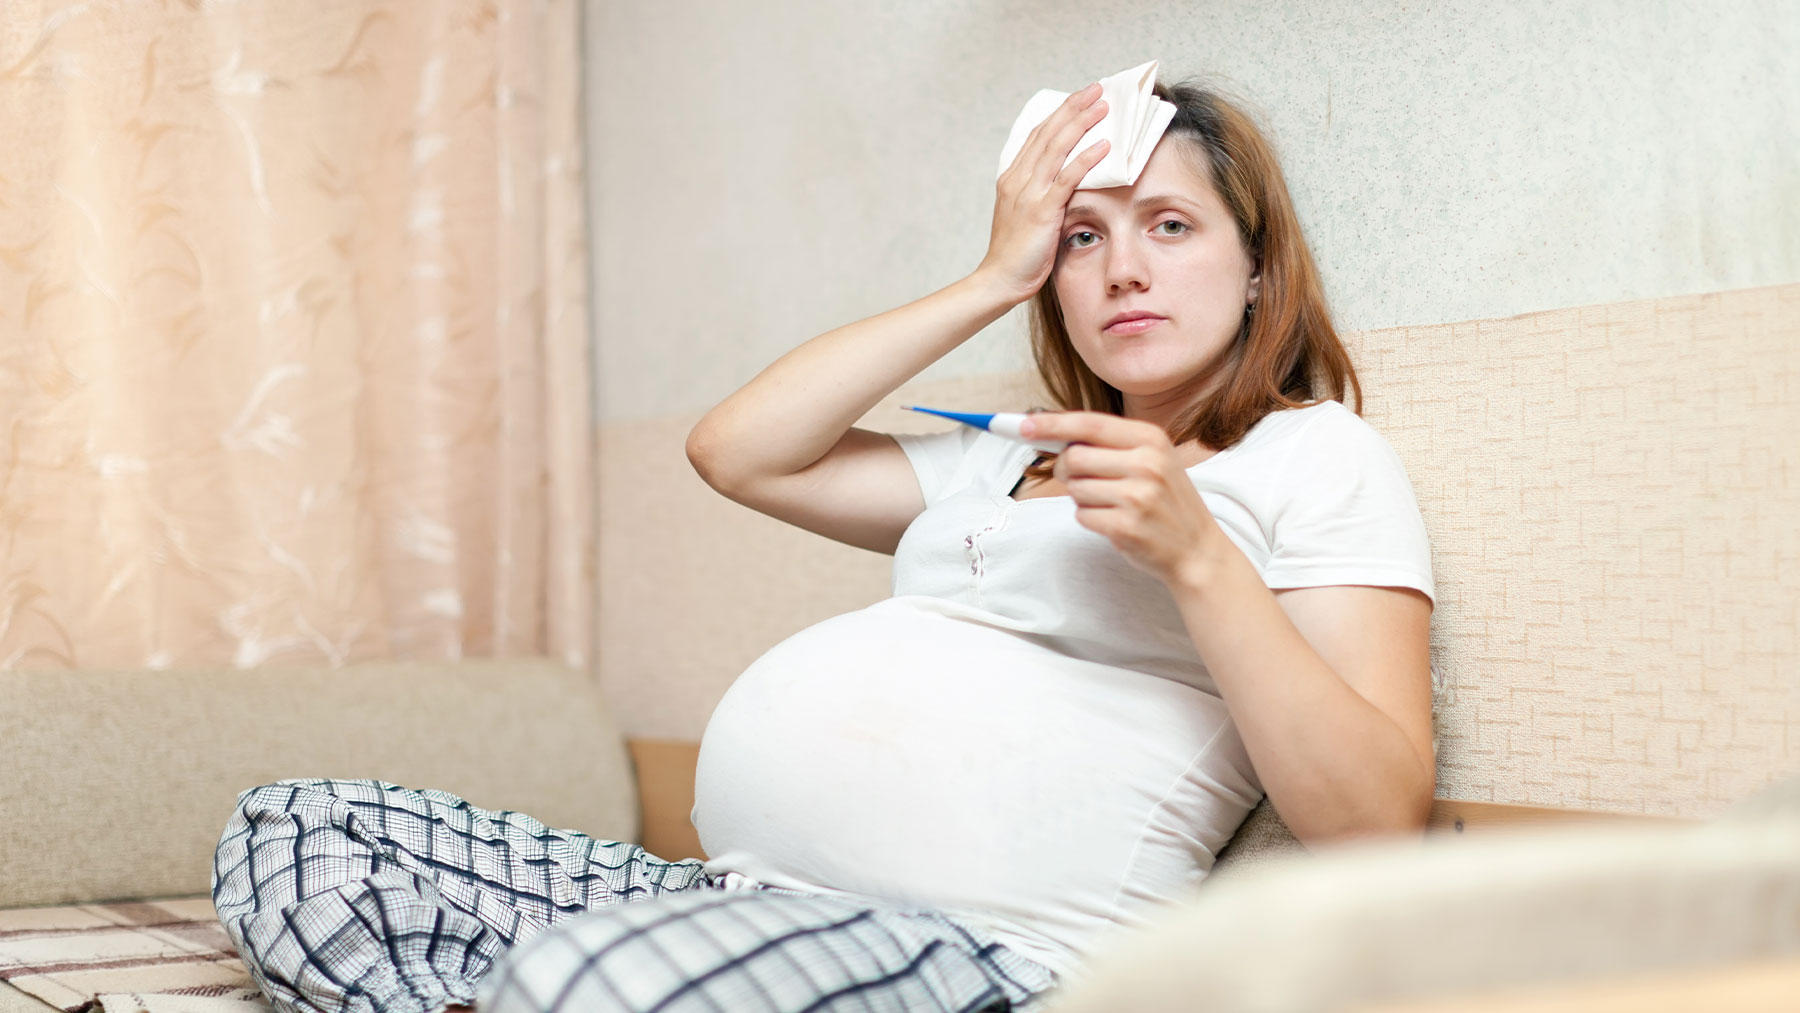 En alrededor del 20% de los casos puede suponer alguna complicación grave para la madre y el bebé.